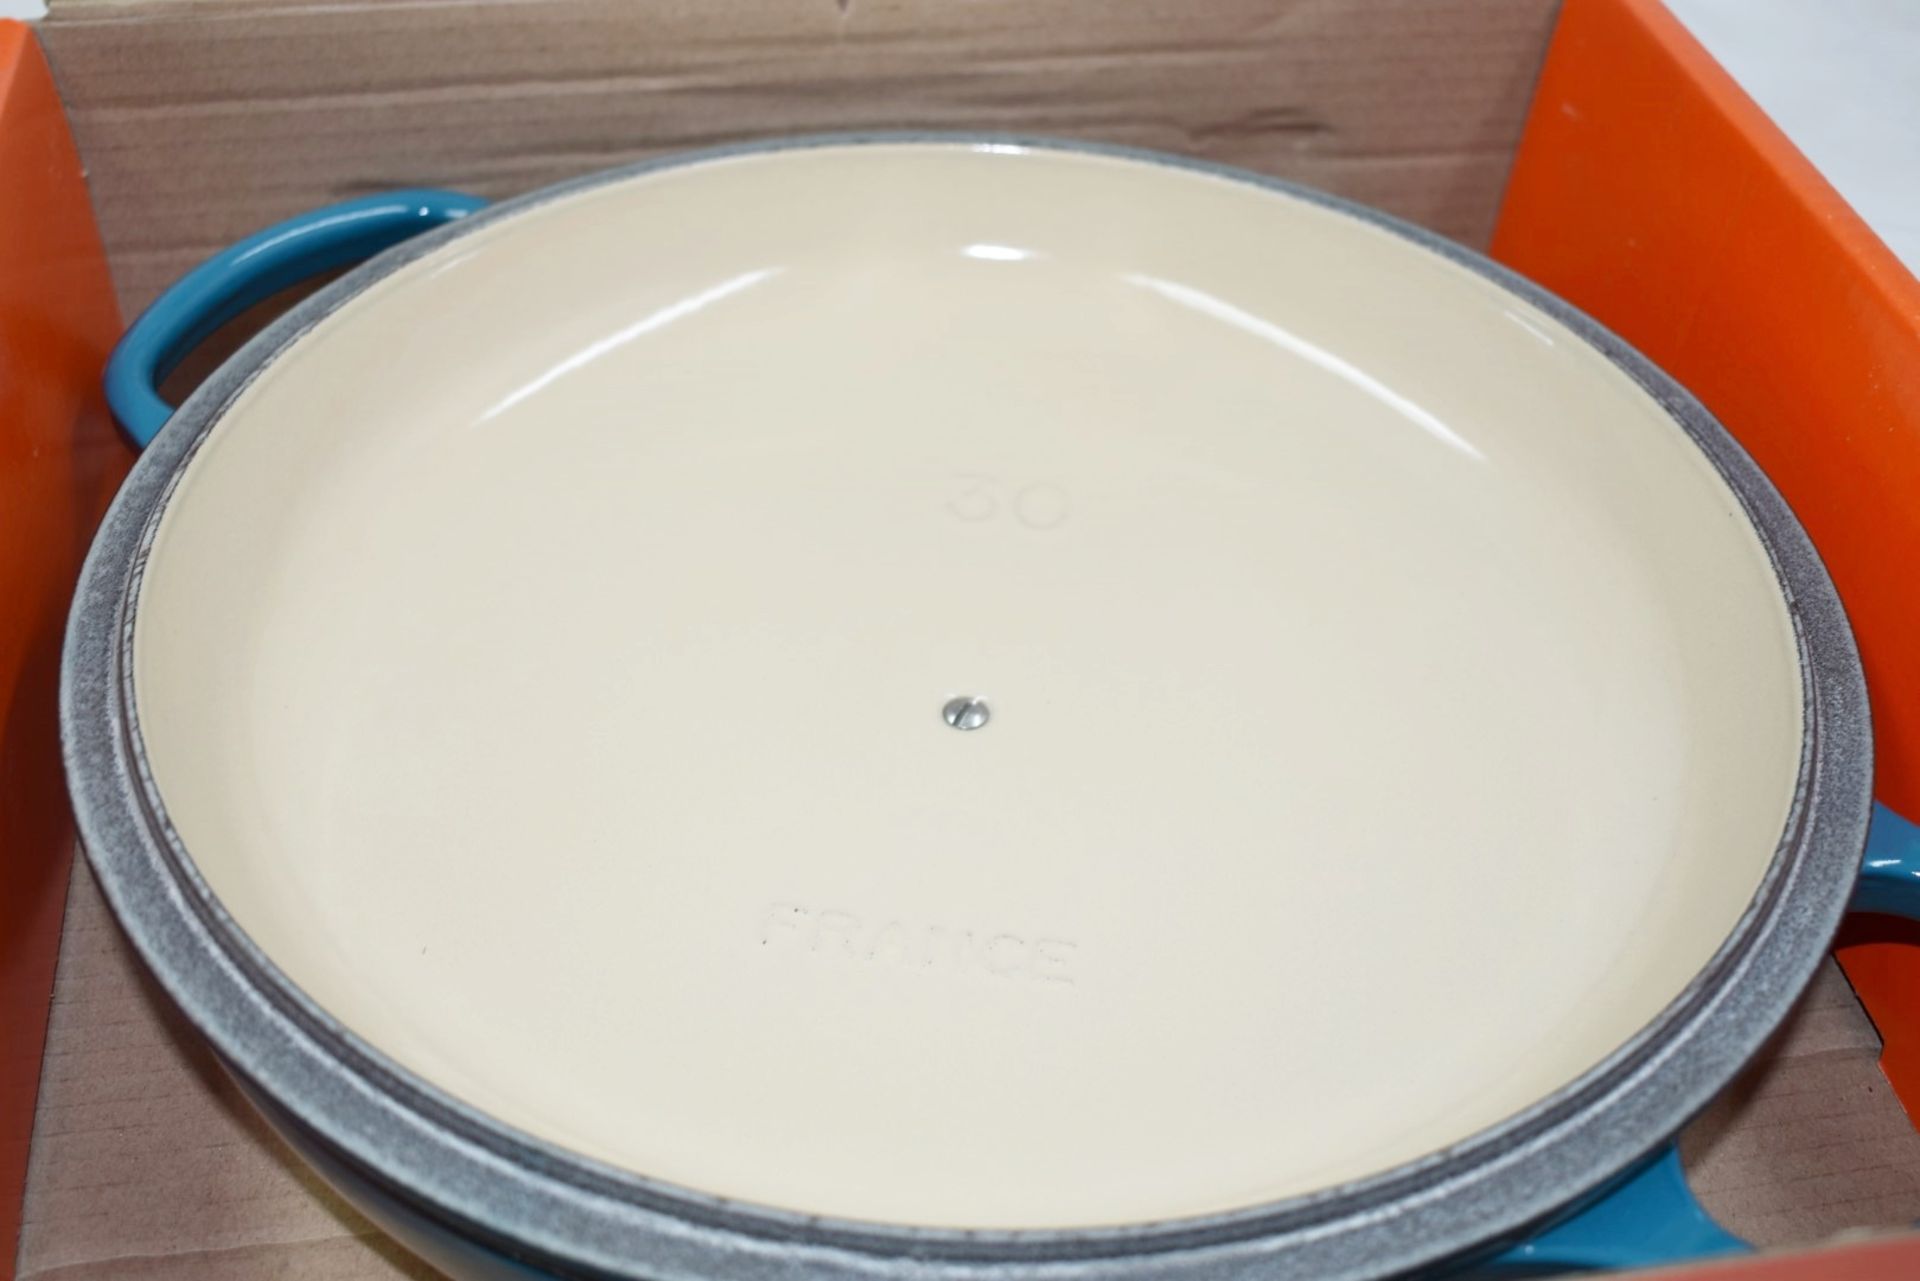 1 x LE CREUSET 'Signature' Enamelled Cast Iron Shallow Casserole Dish (30cm) - Original RRP £270.00 - Image 9 of 17